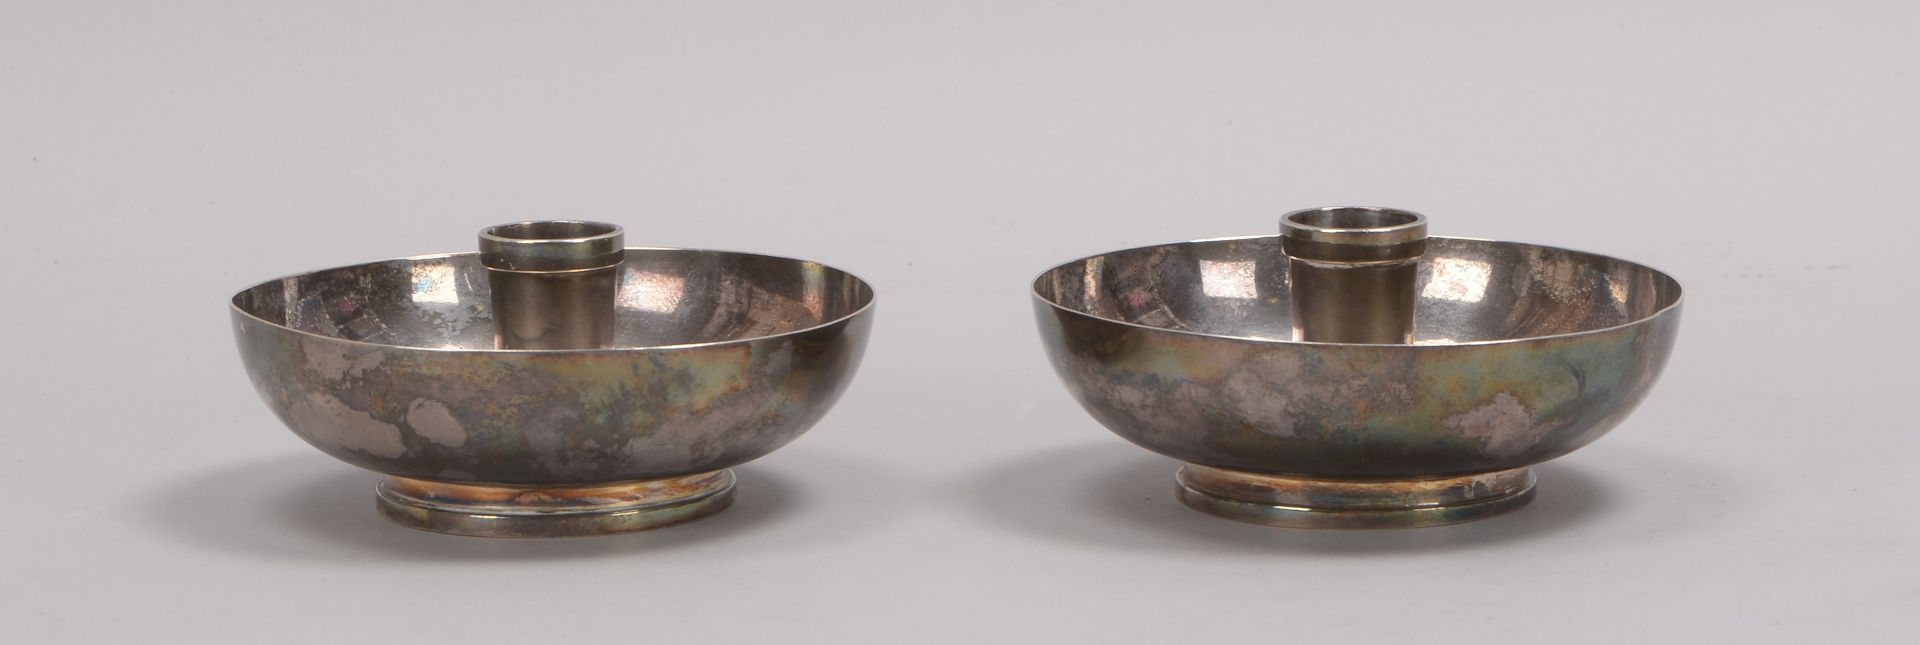 Paar Schalen-Kerzenleuchter (Schweden), 830 Silber (mehrfach punziert); Hohe 5,5 cm, Ø 12 cm